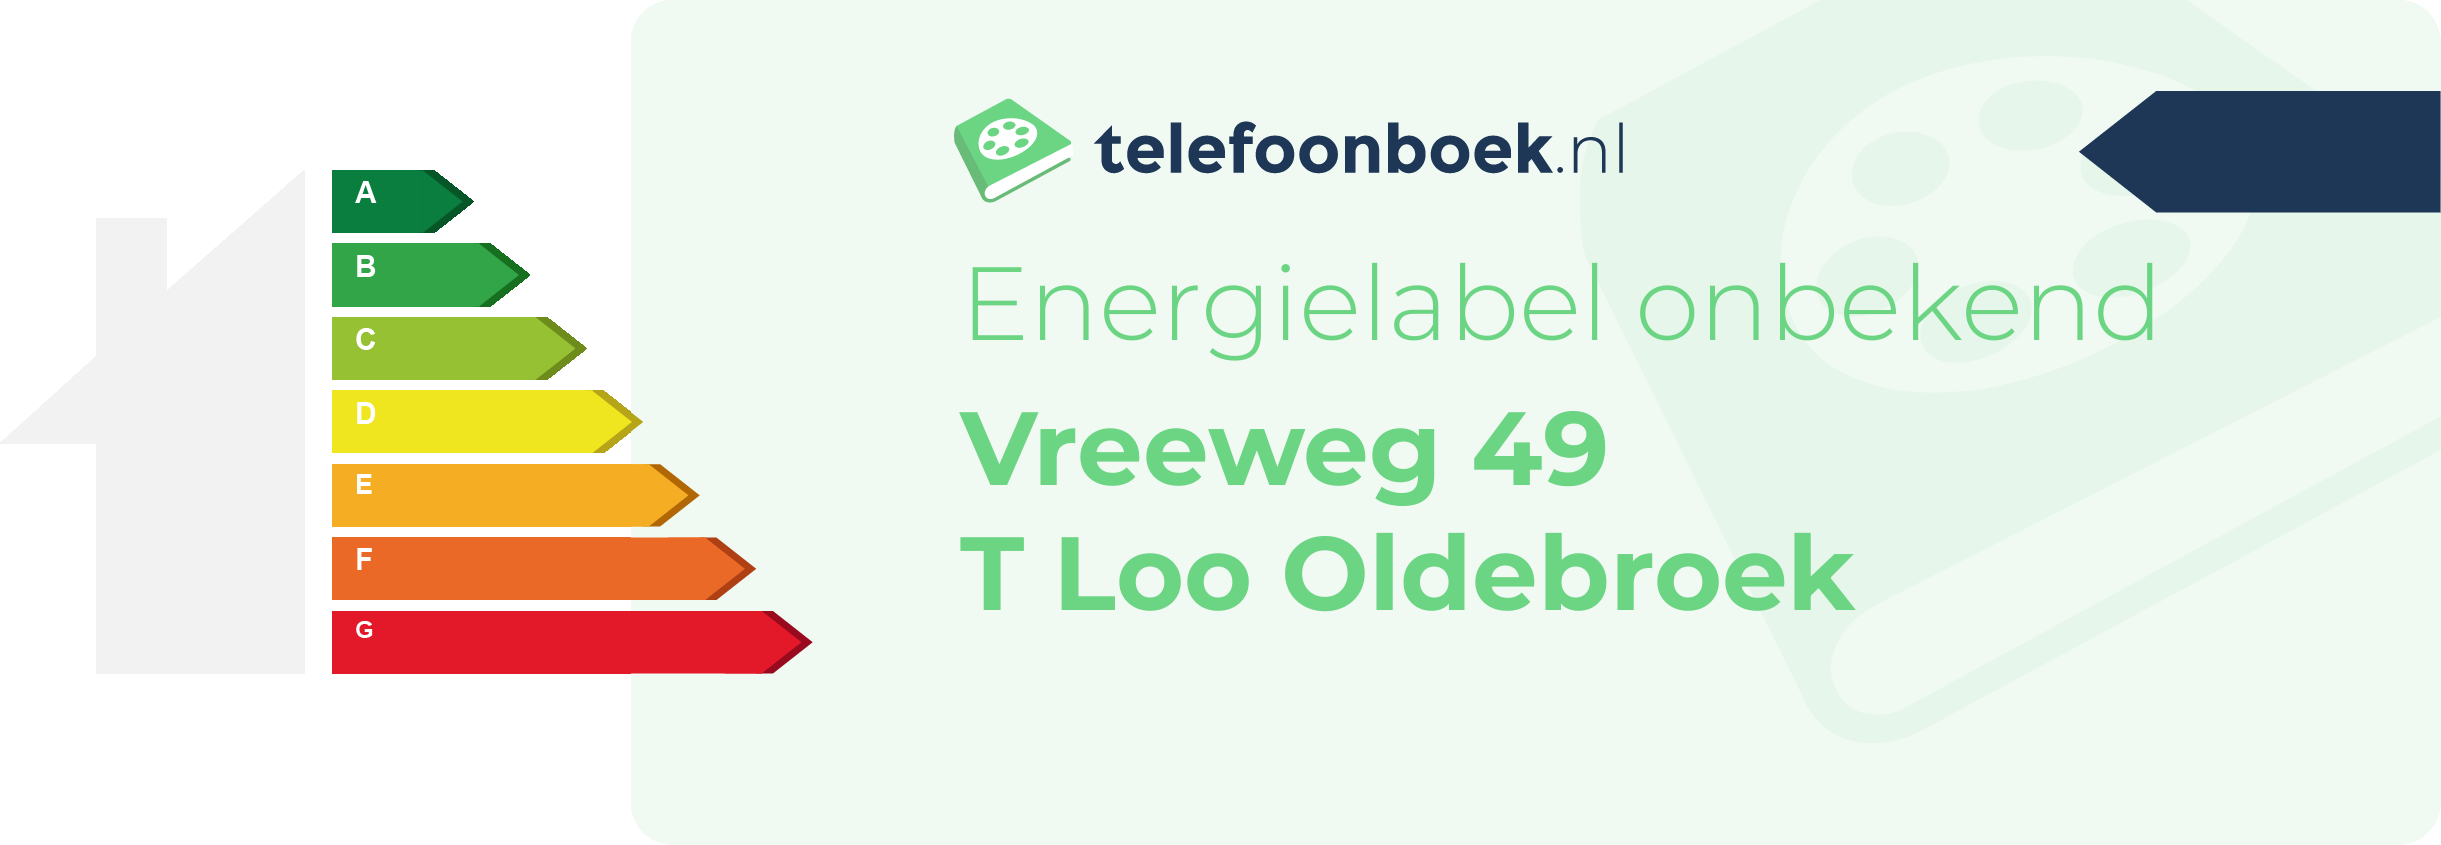 Energielabel Vreeweg 49 T Loo Oldebroek